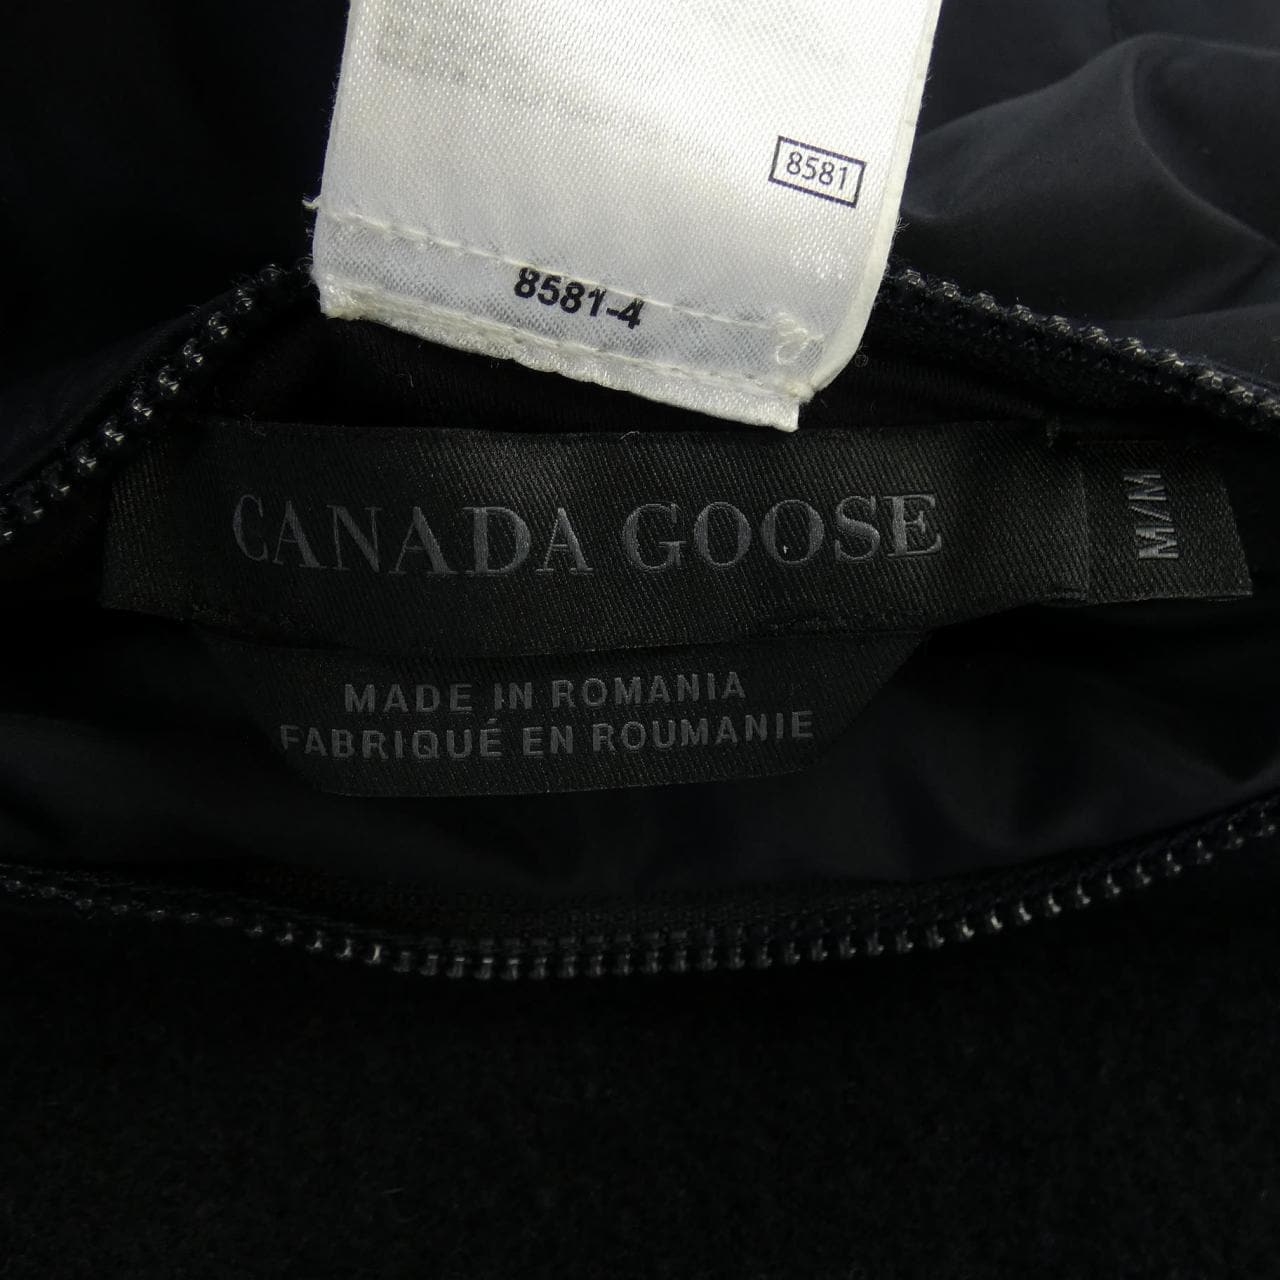 加拿大鵝CANADA GOOSE夾克衫